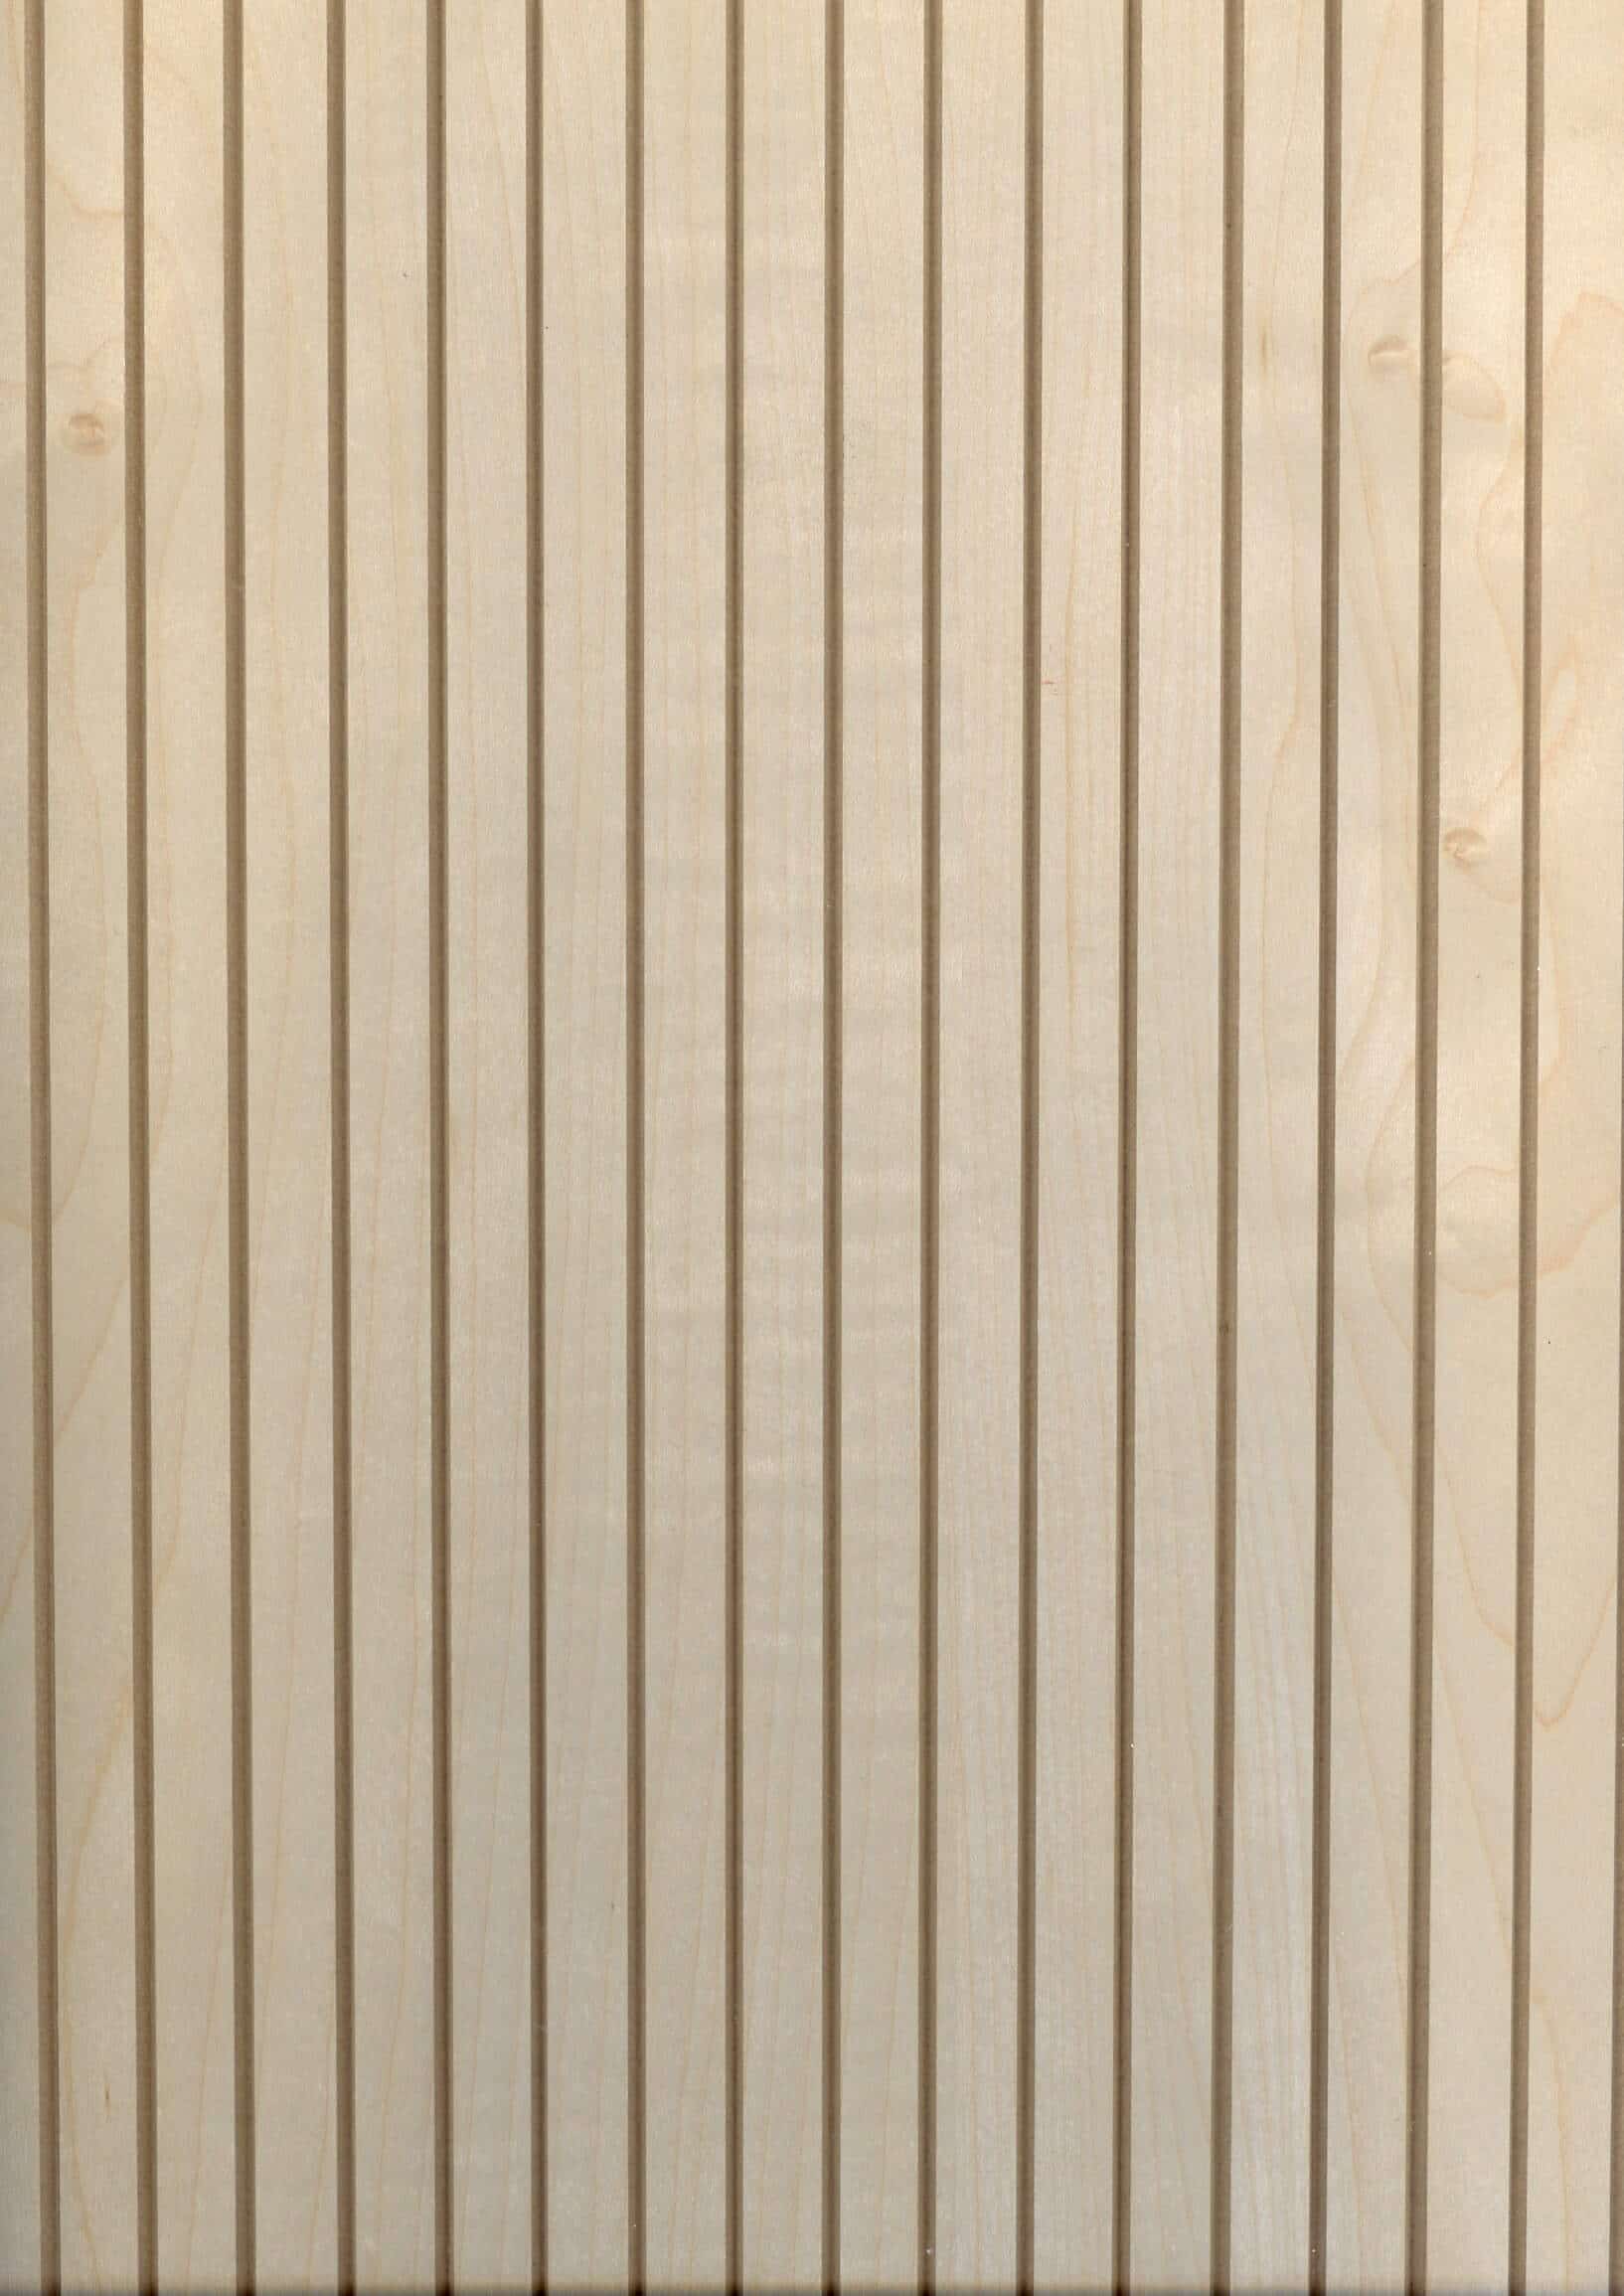 Panel de madera: revestimiento de madera de arce para cubiertas de postes